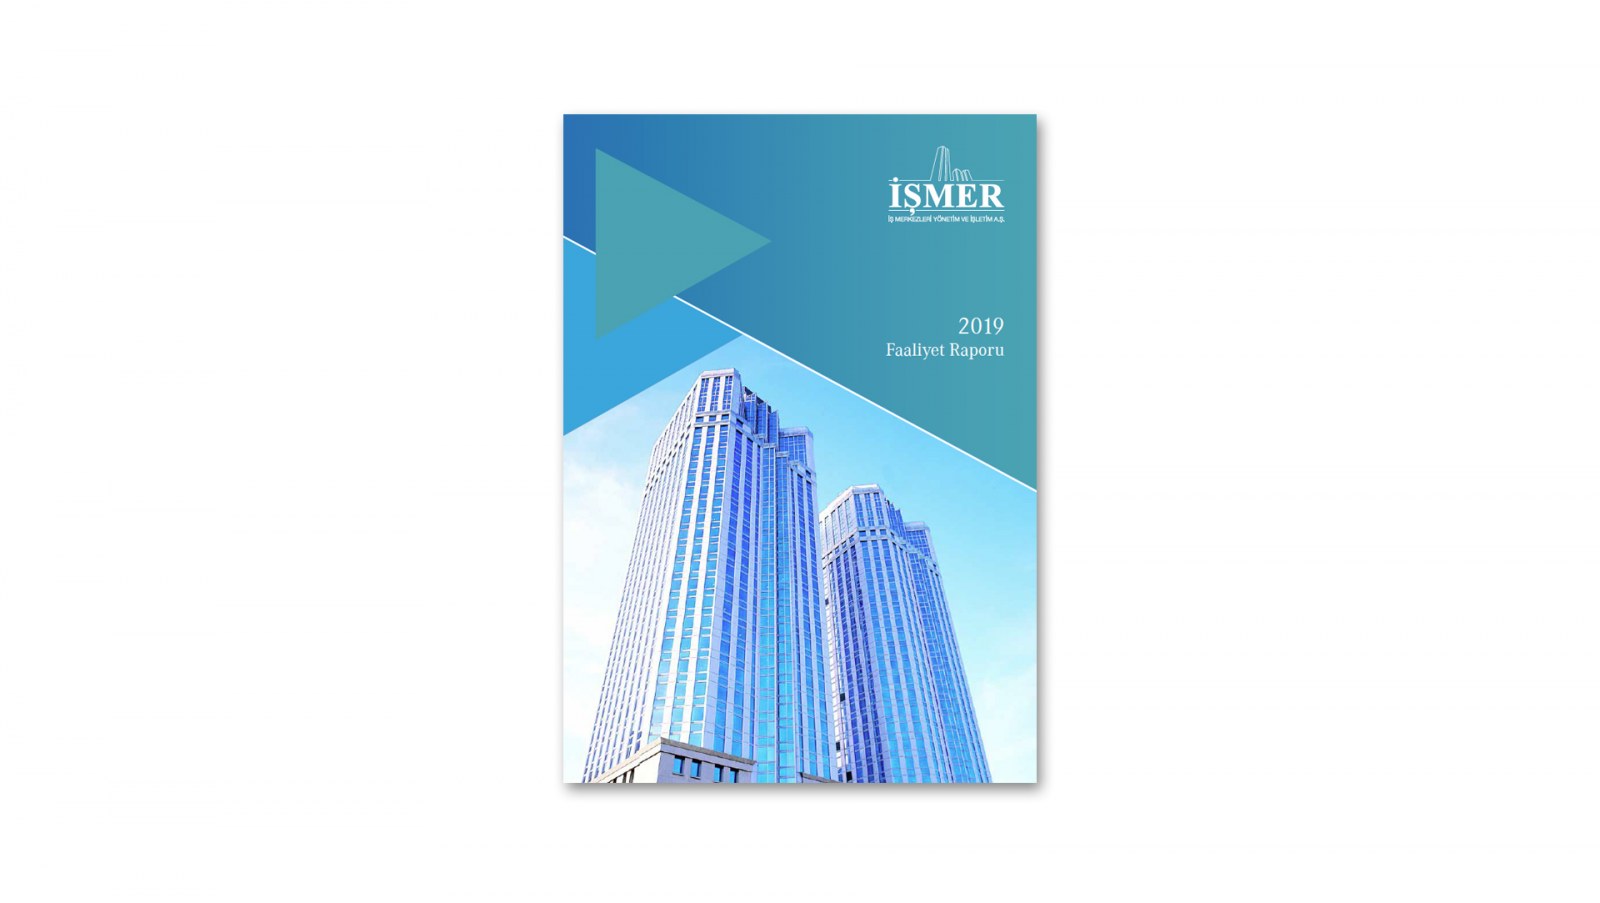 İŞMER / 2019 Faaliyet Raporu / 2019 Annual Report